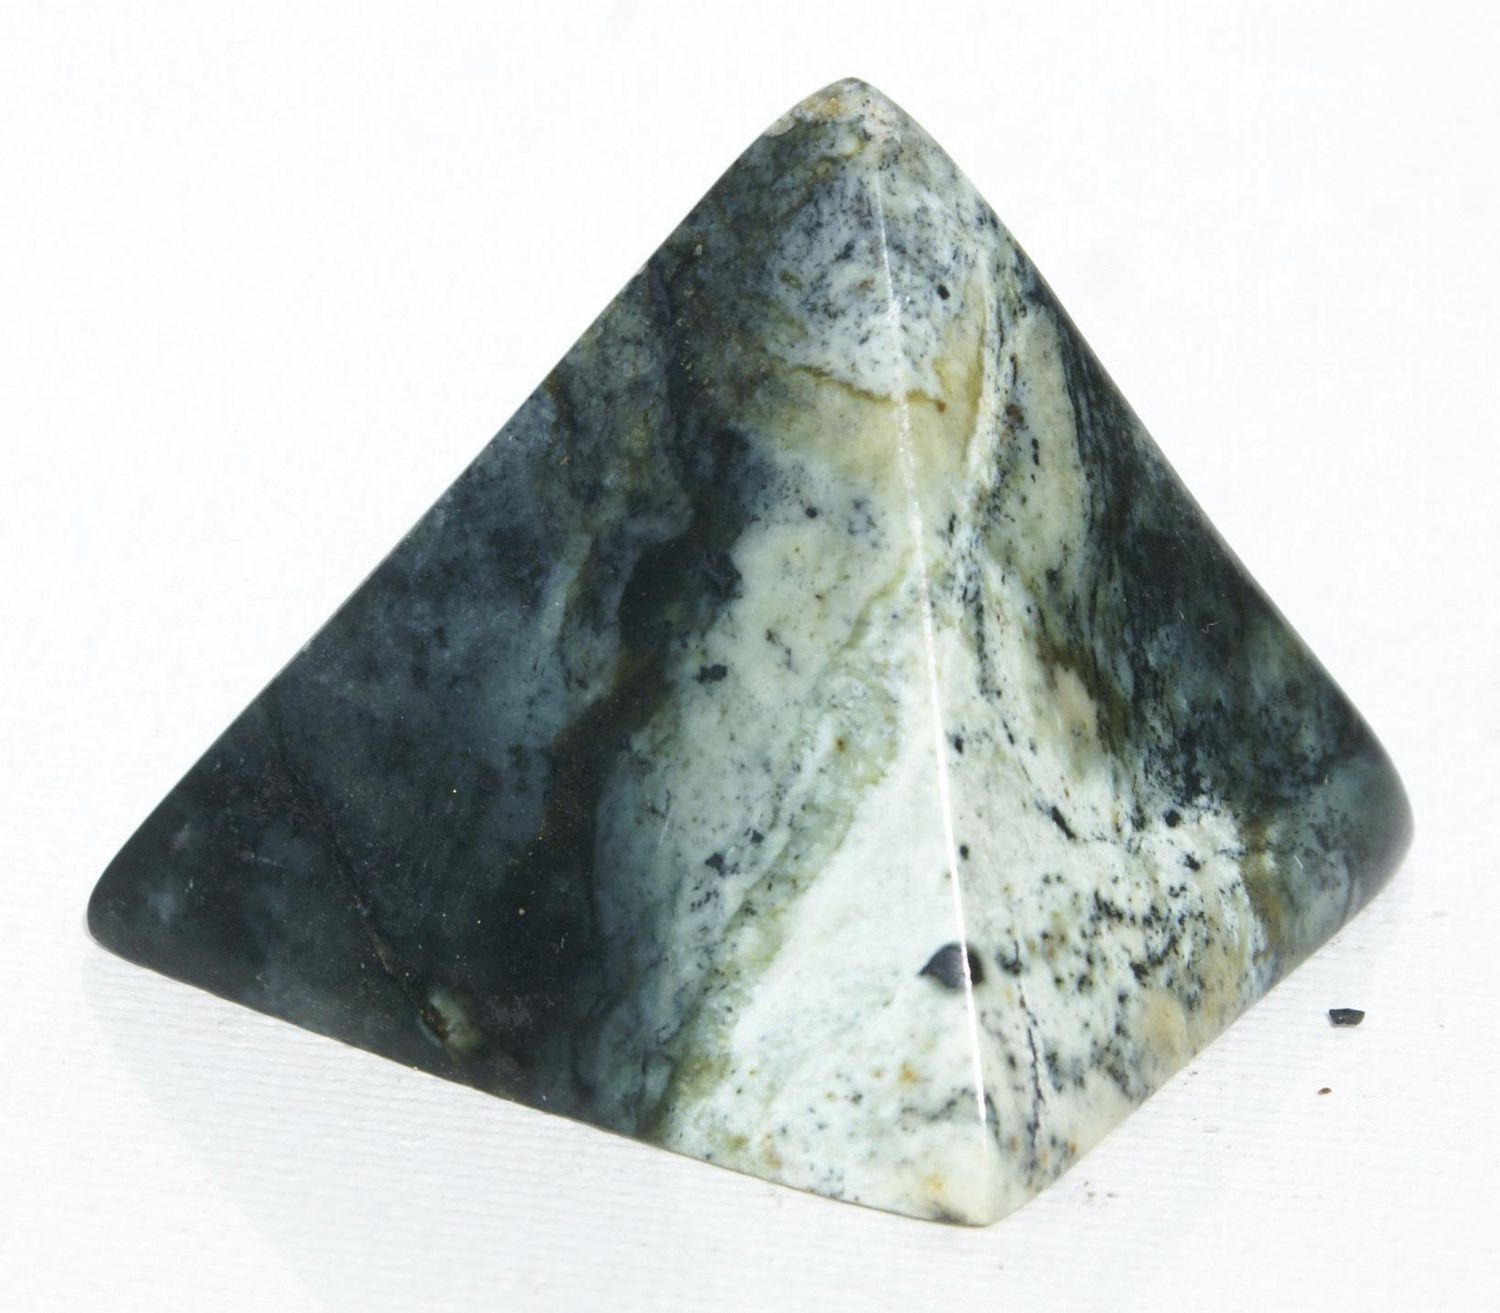 Пирамида из натурального камня нефрита, выточена вручную